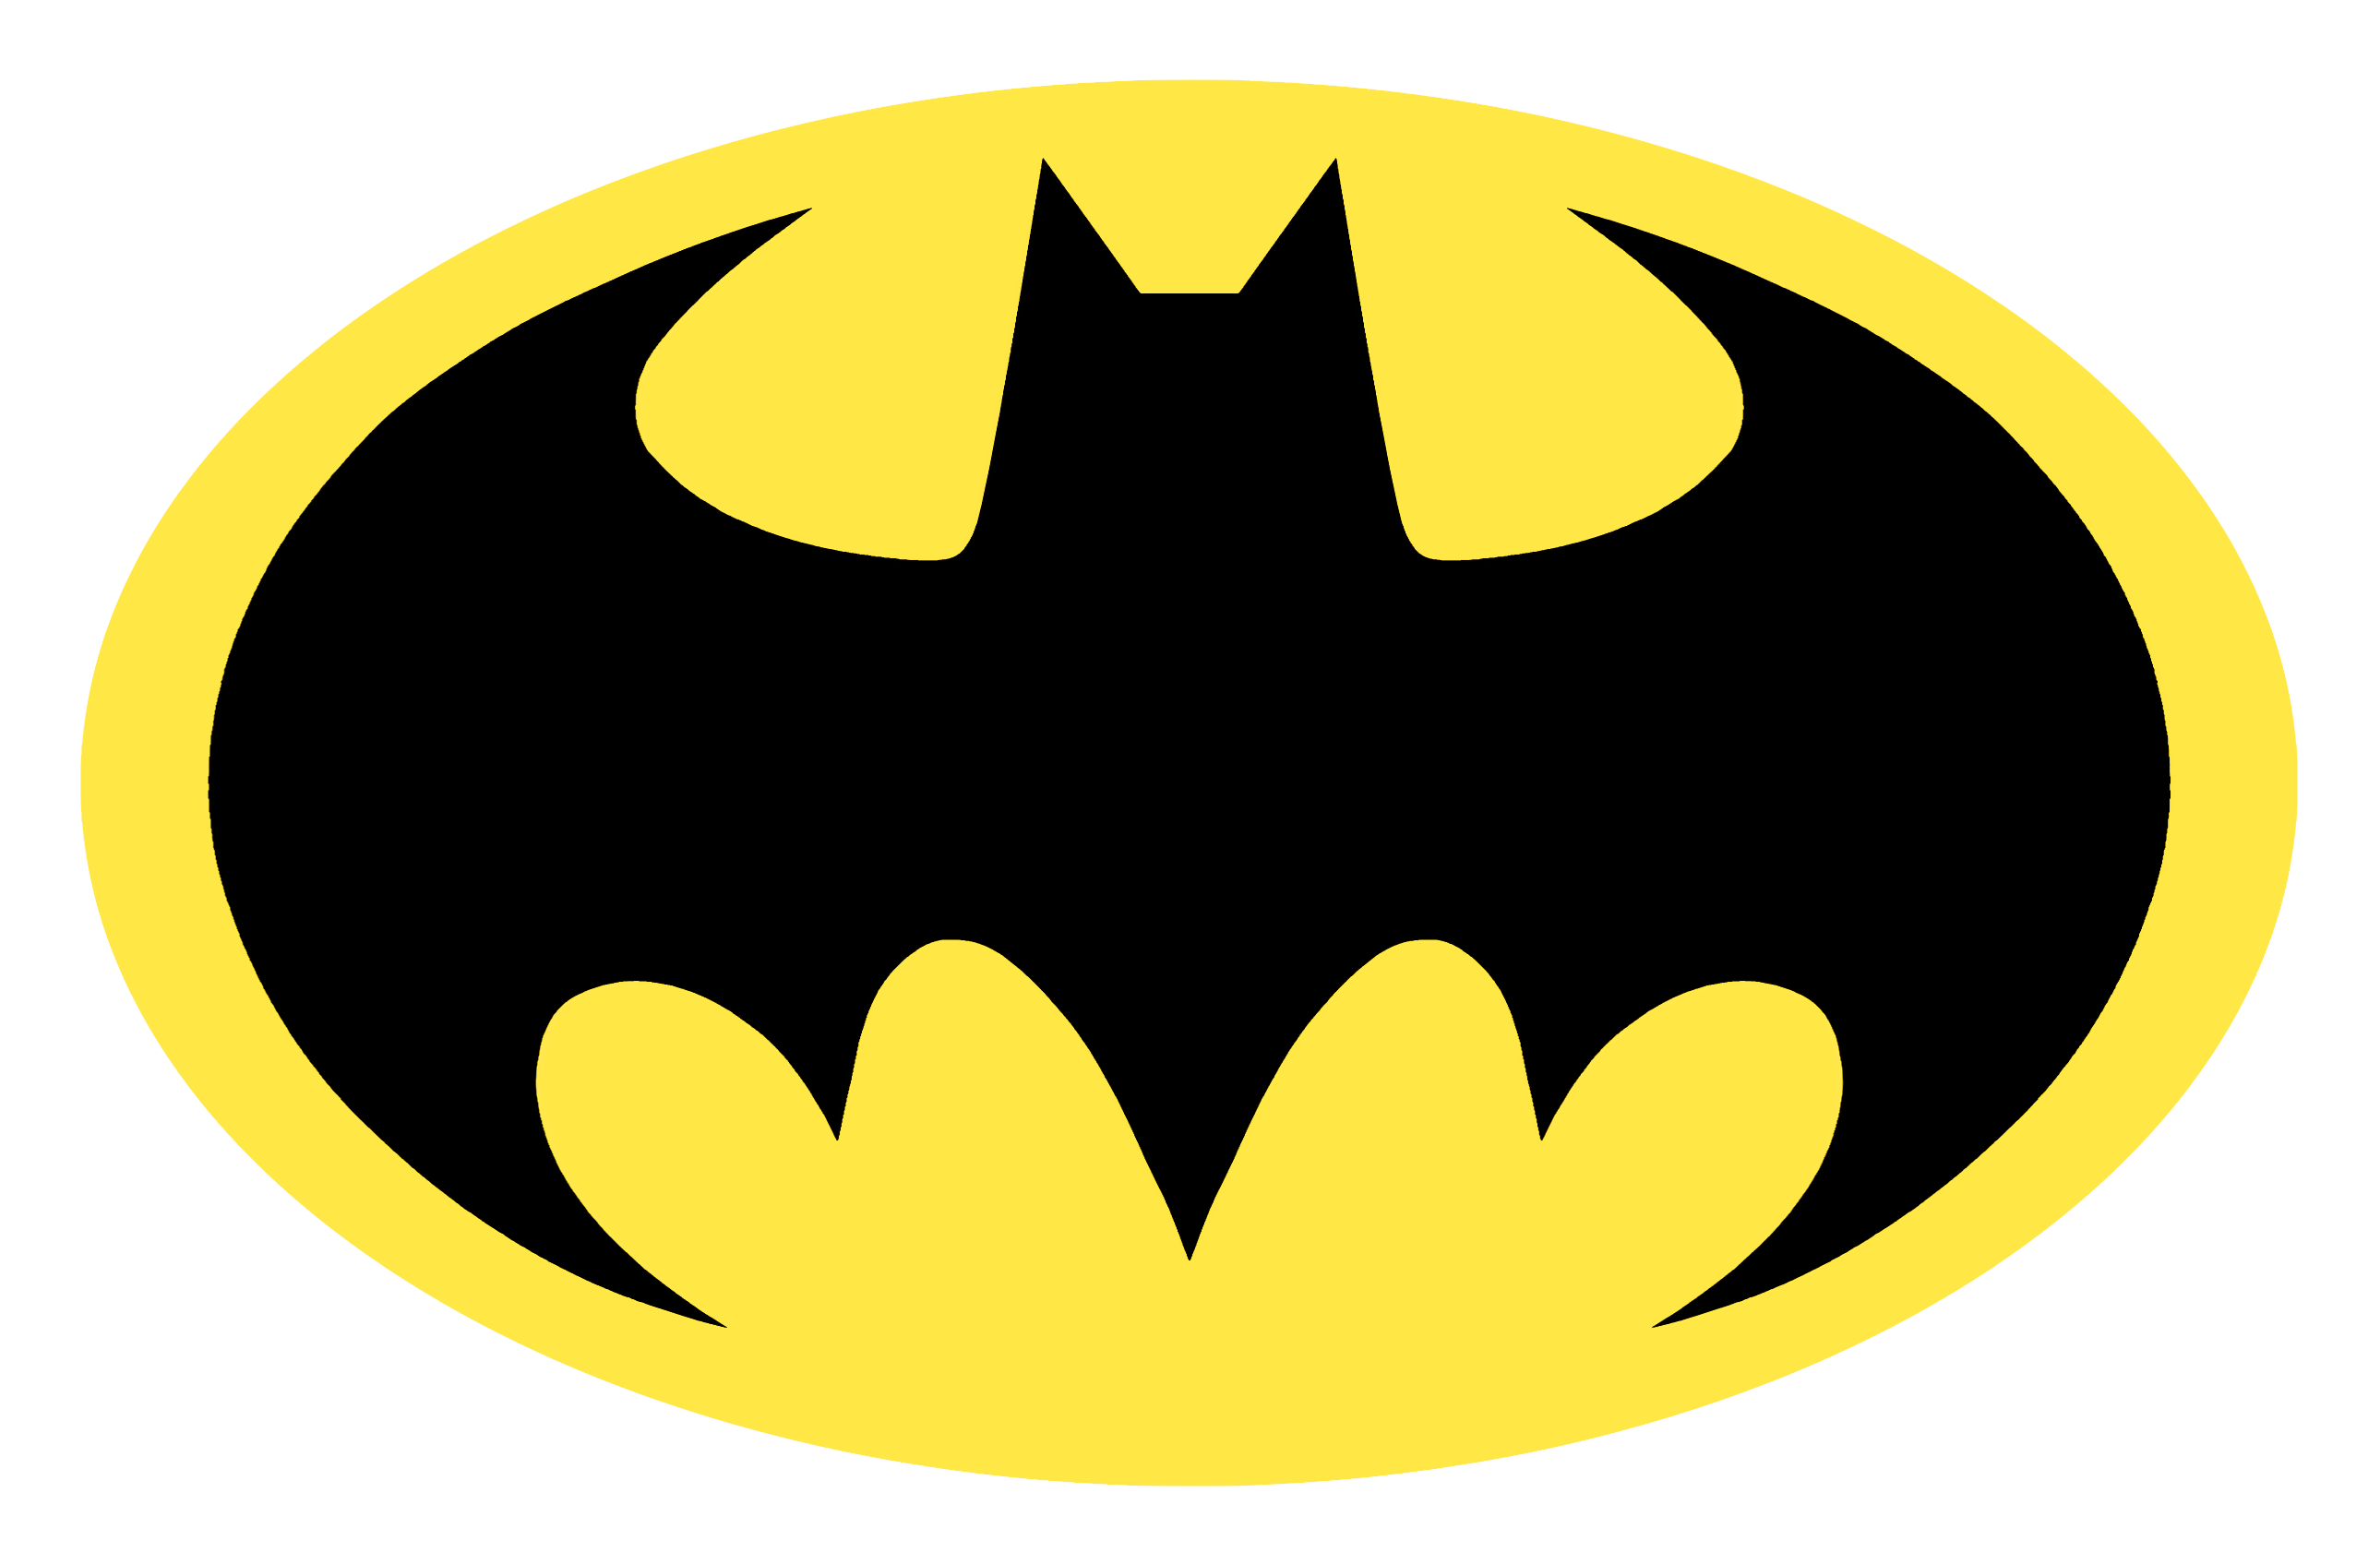 Batman Joker Bat-Signal Robin - batman logo png download - 2579*1695 - Free  Transparent Batman png Download. - Clip Art Library